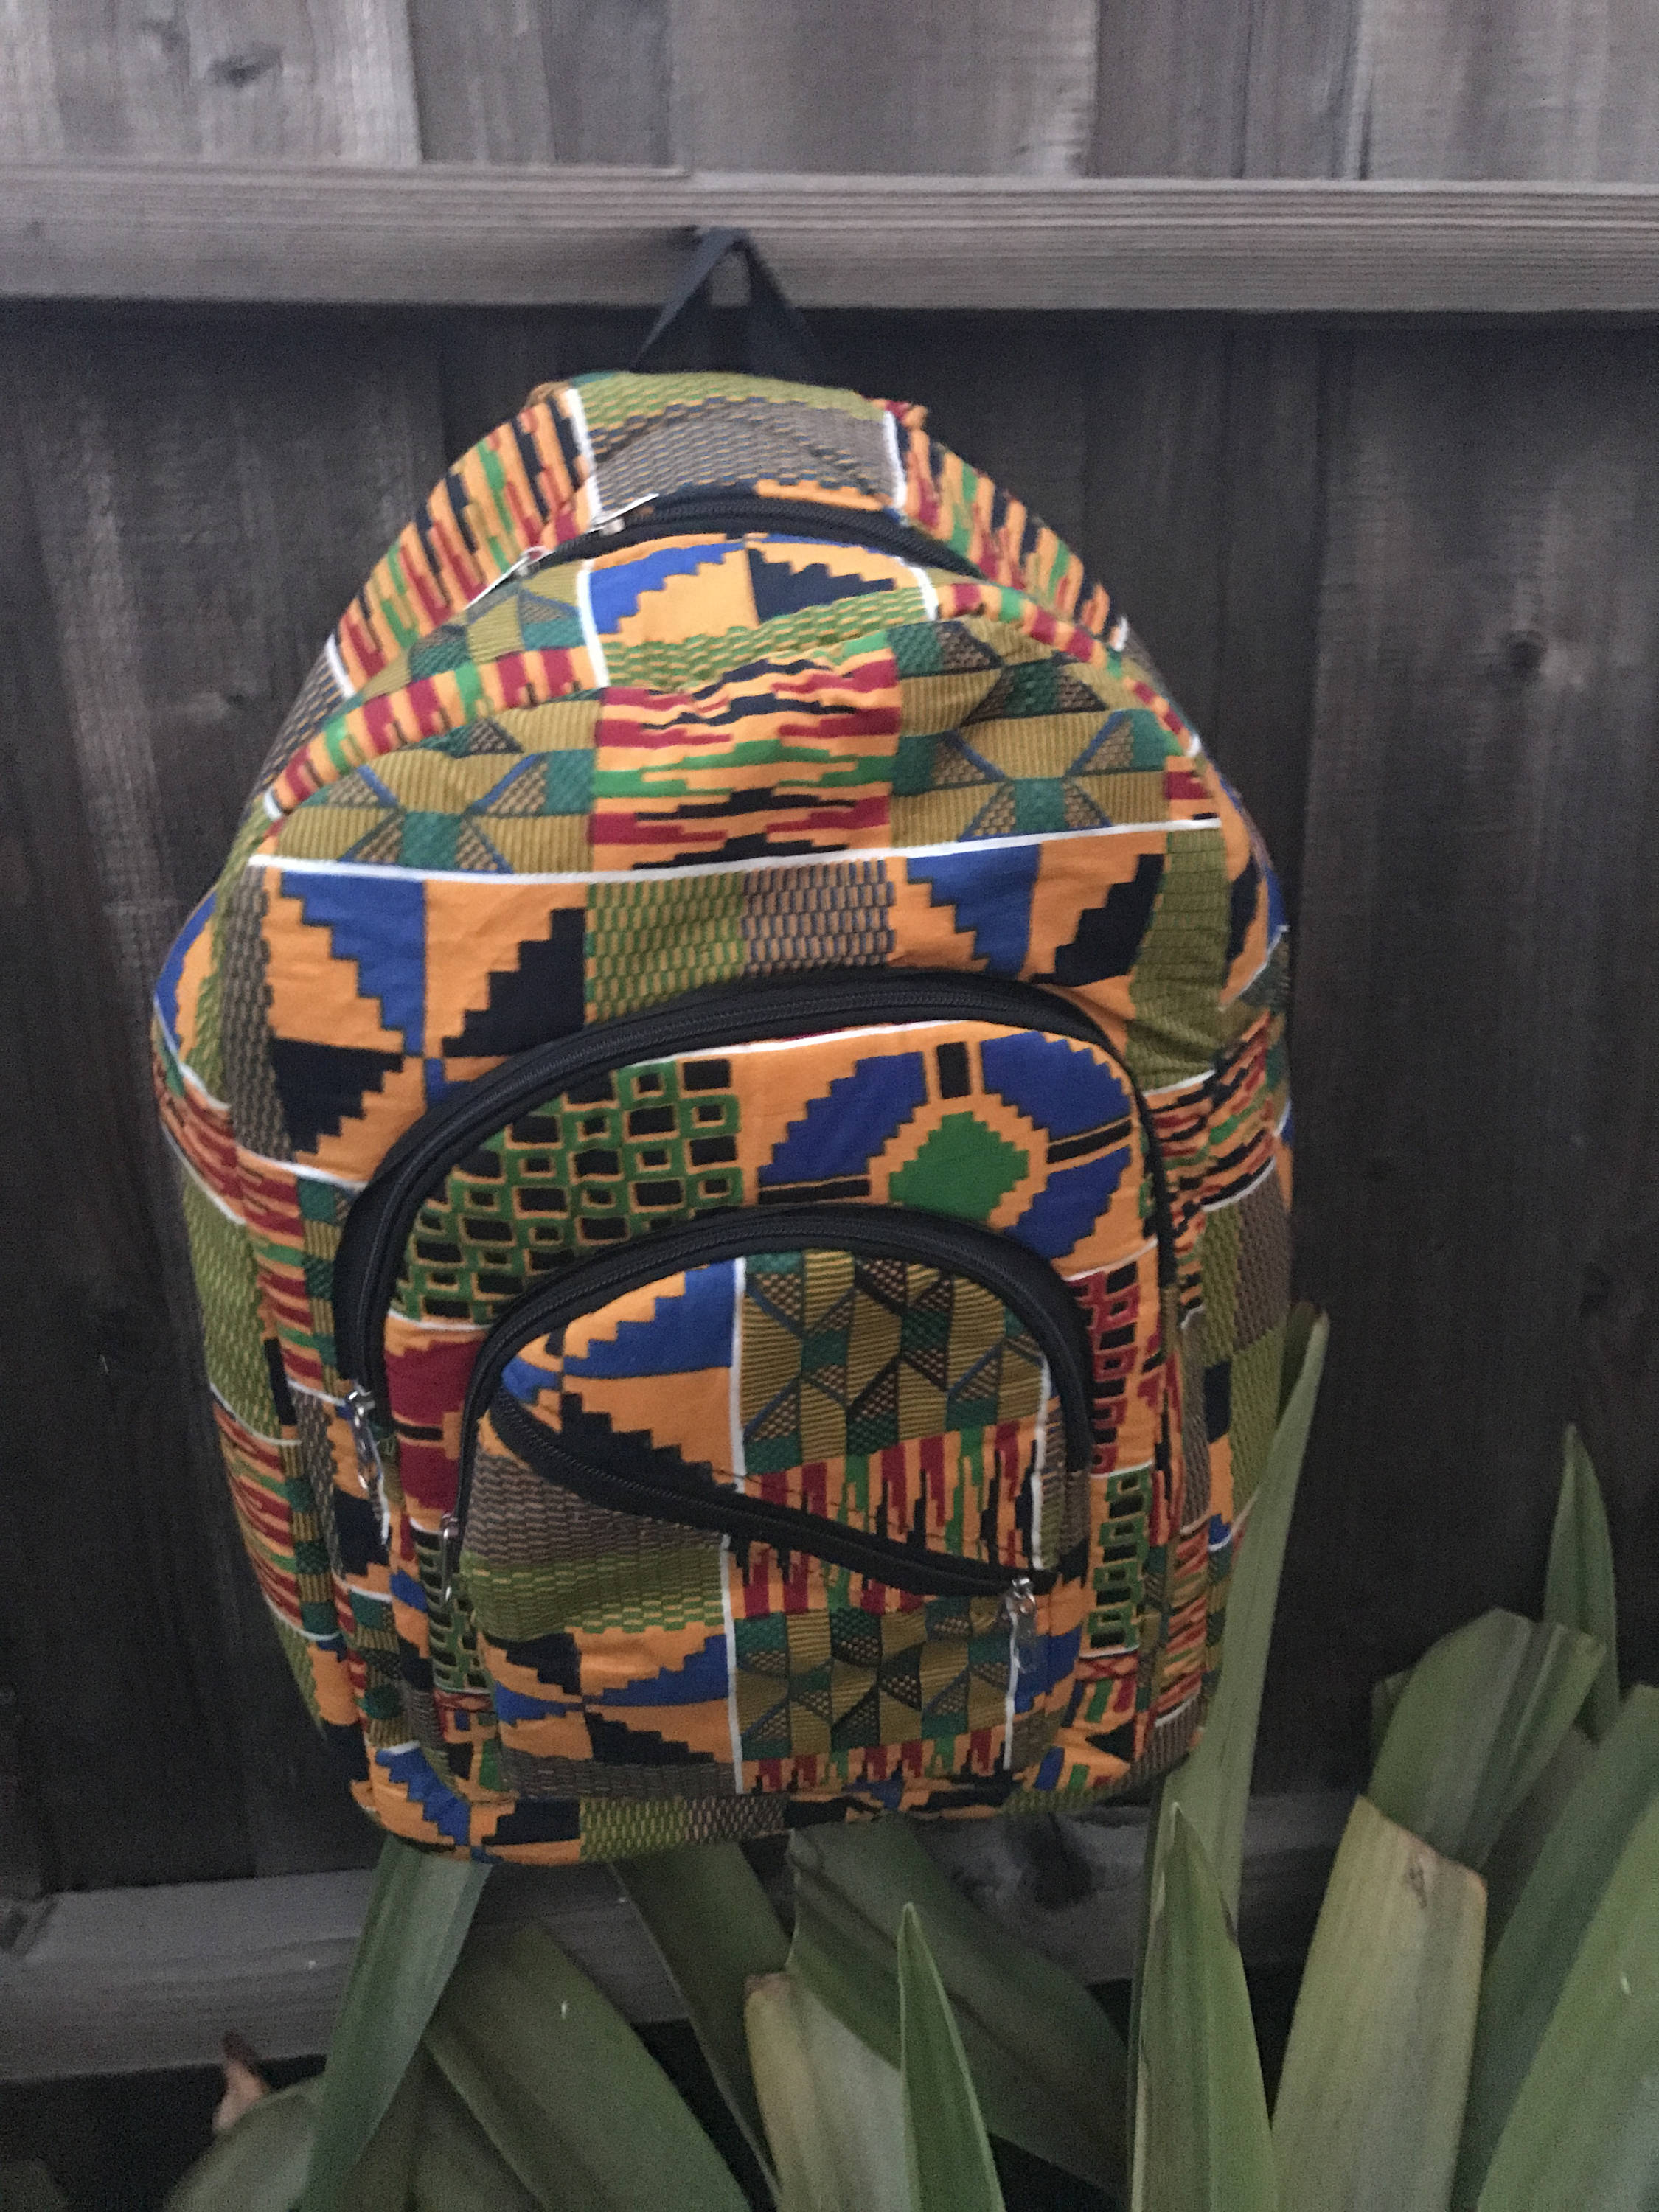 L’Alpin cloth backpack